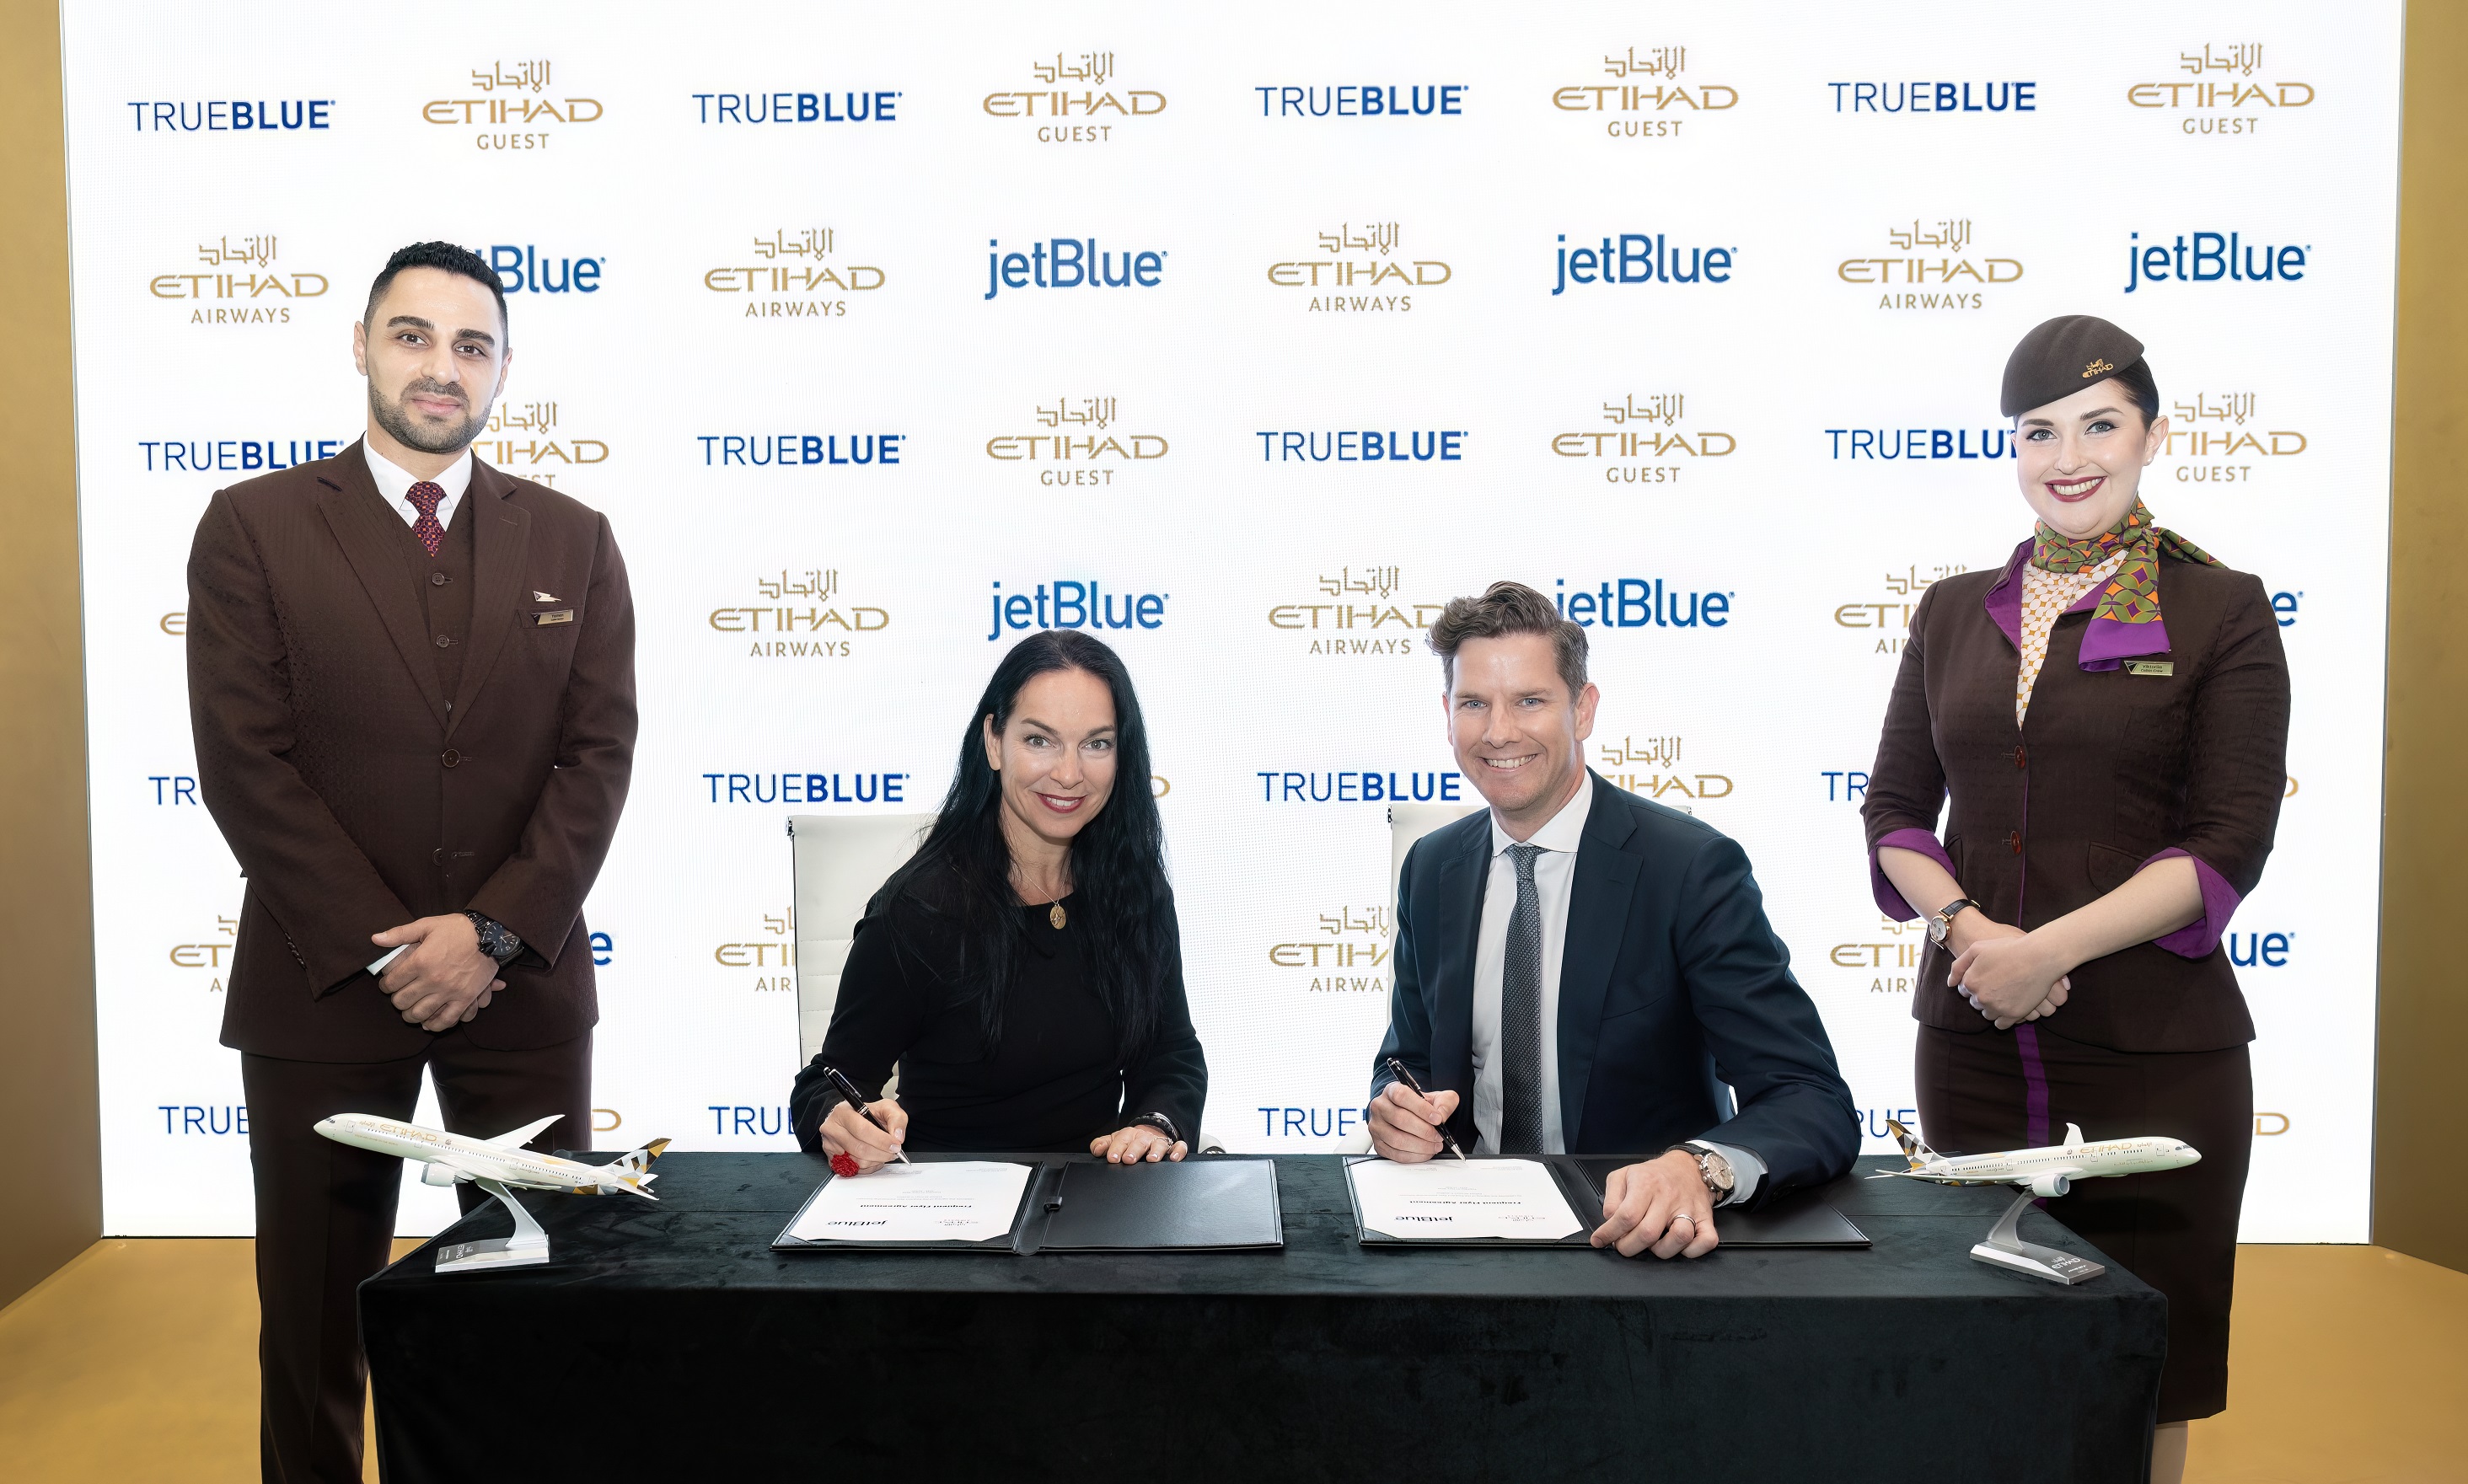 JetBlue and Etihad announces loyalty partnership